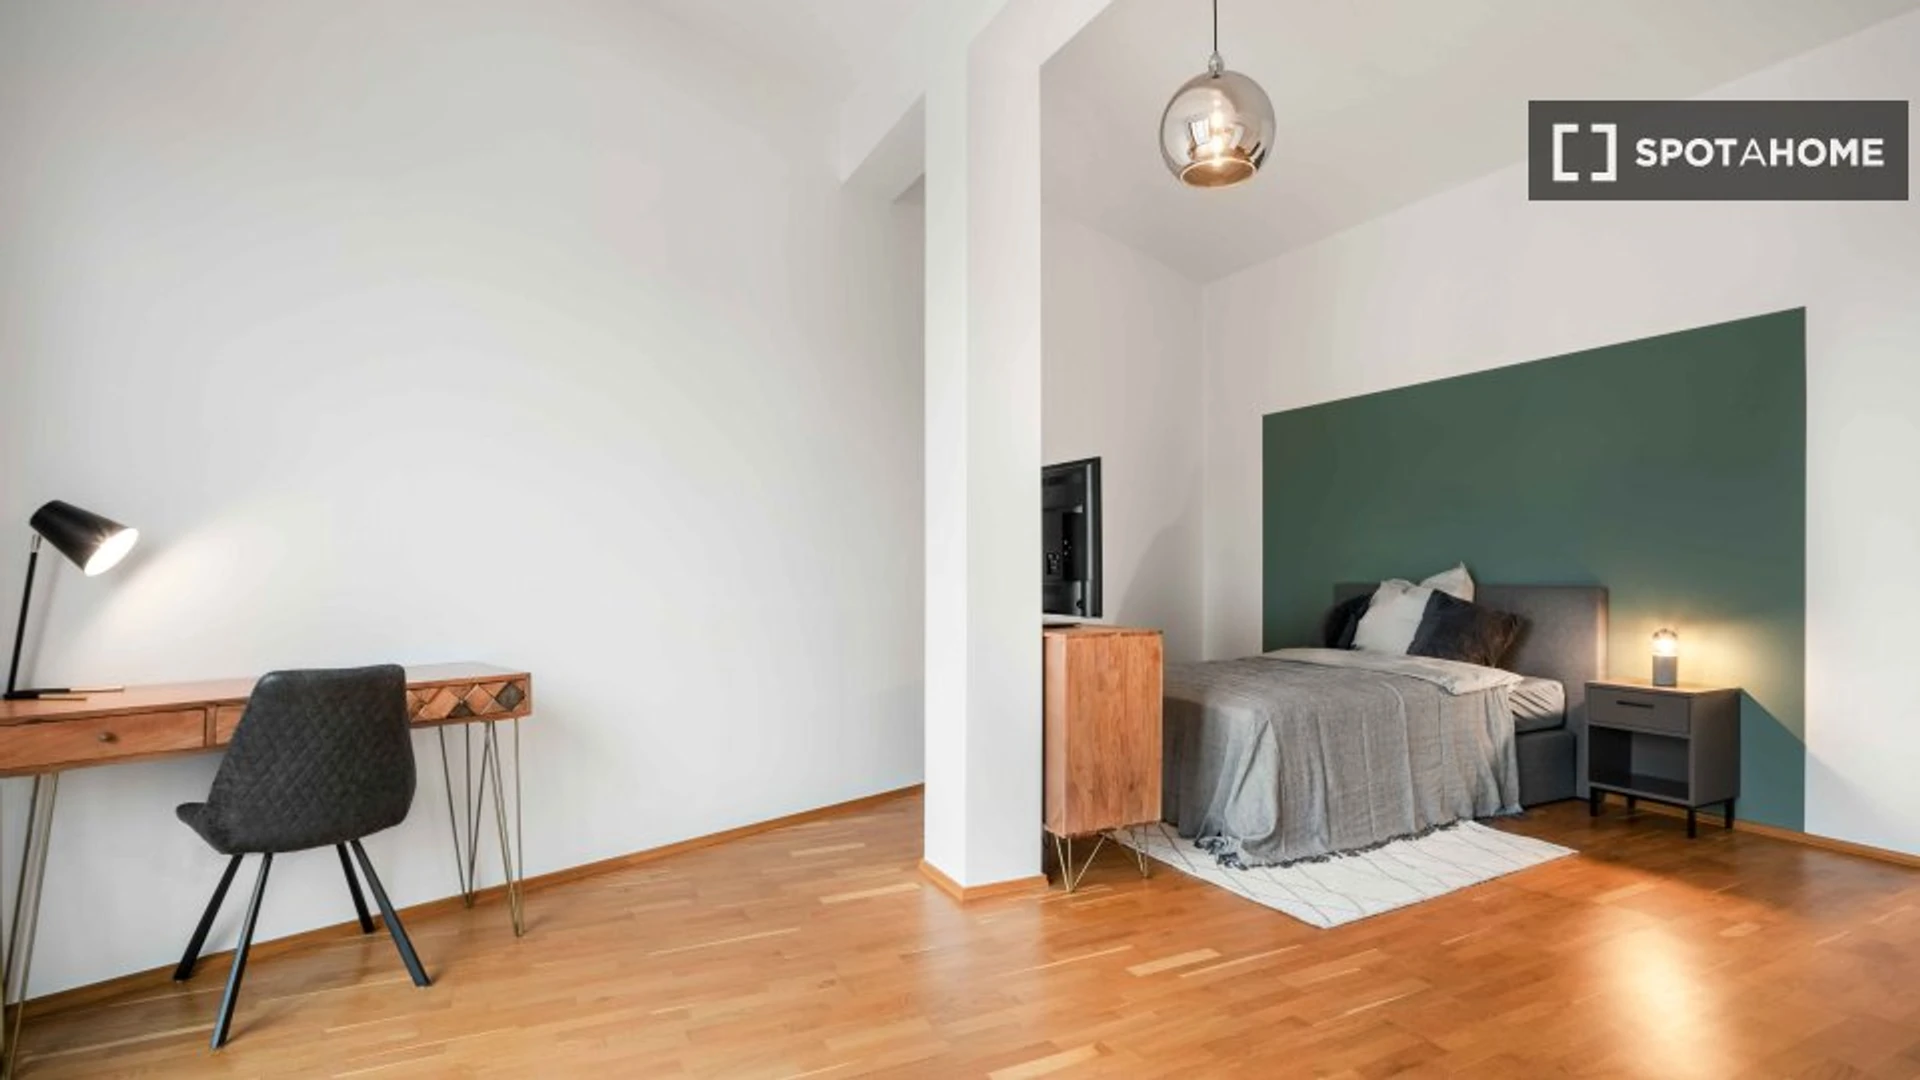 Frankfurt de çift kişilik yataklı kiralık oda